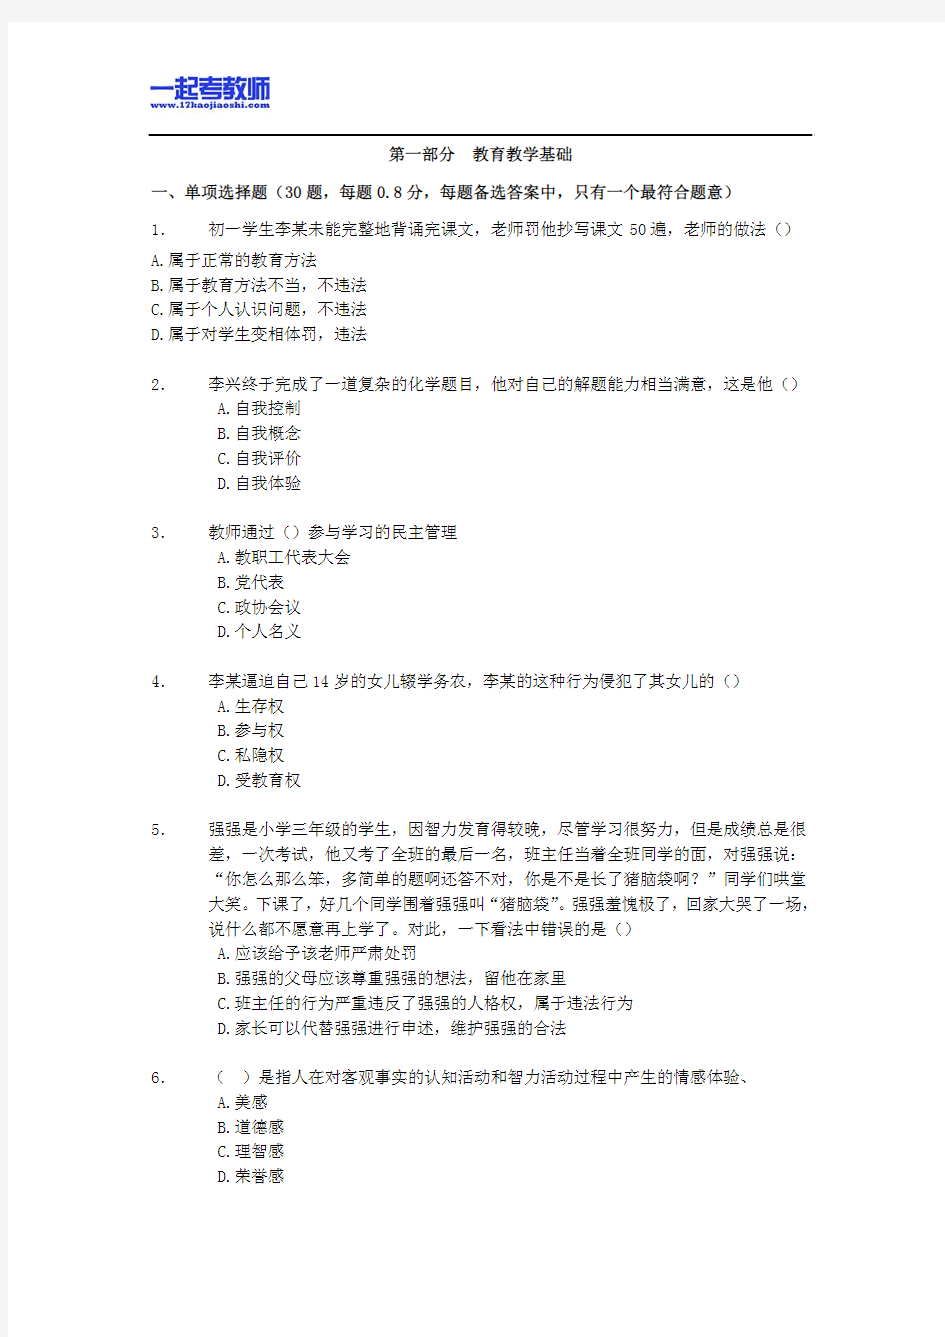 2012年深圳市教师招聘考试笔试中学学段教育综合真题答案解析